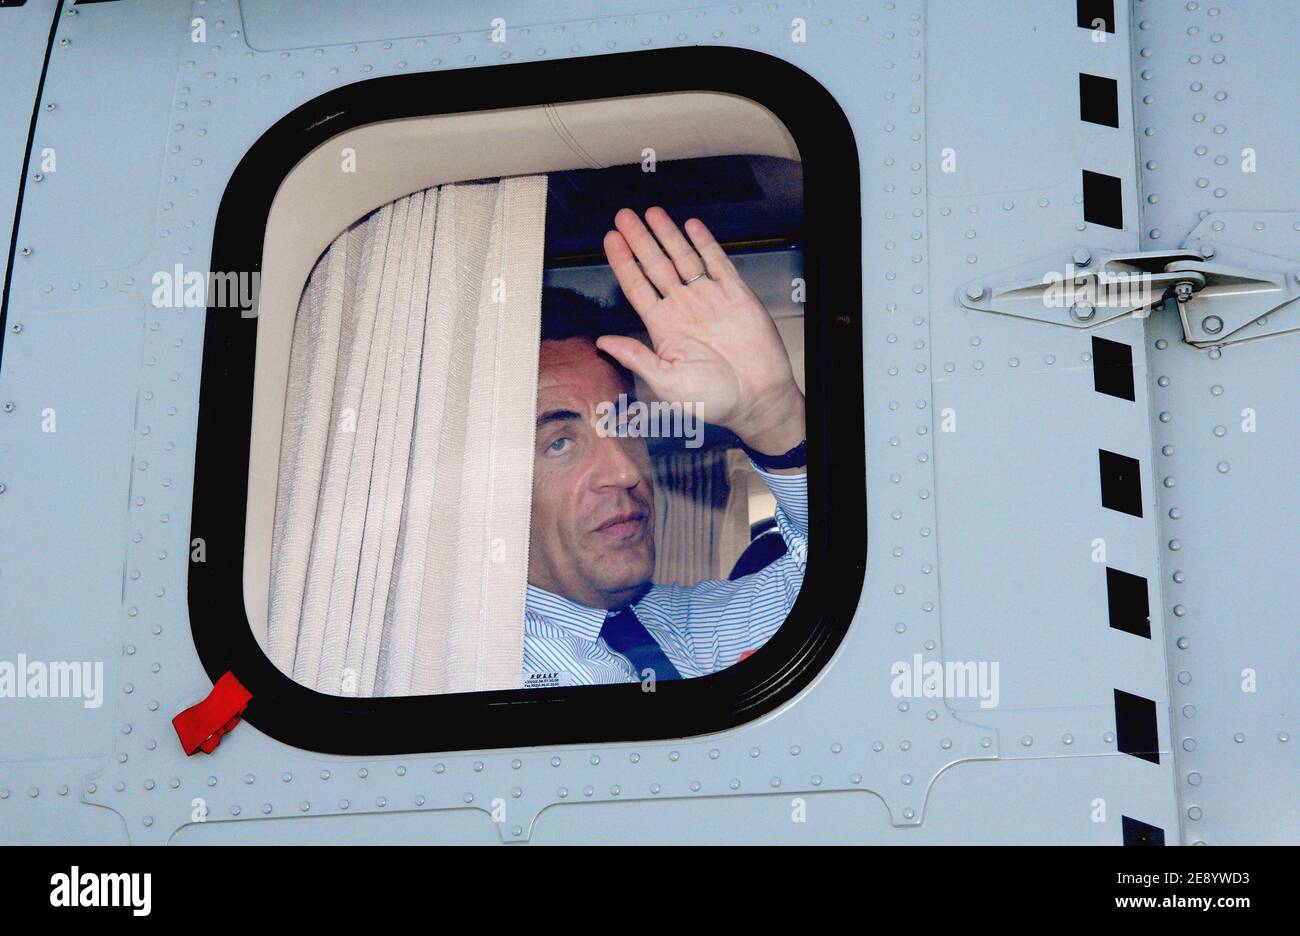 il presidente francese Nicolas Sarkozy lascia l'aeroporto di Tanger, in Marocco, il 23 ottobre 2007, in un secondo giorno di tre giorni di visita di stato al Regno del Marocco. Foto di Christophe Guibbaud/ABACAPRESS.COM Foto Stock